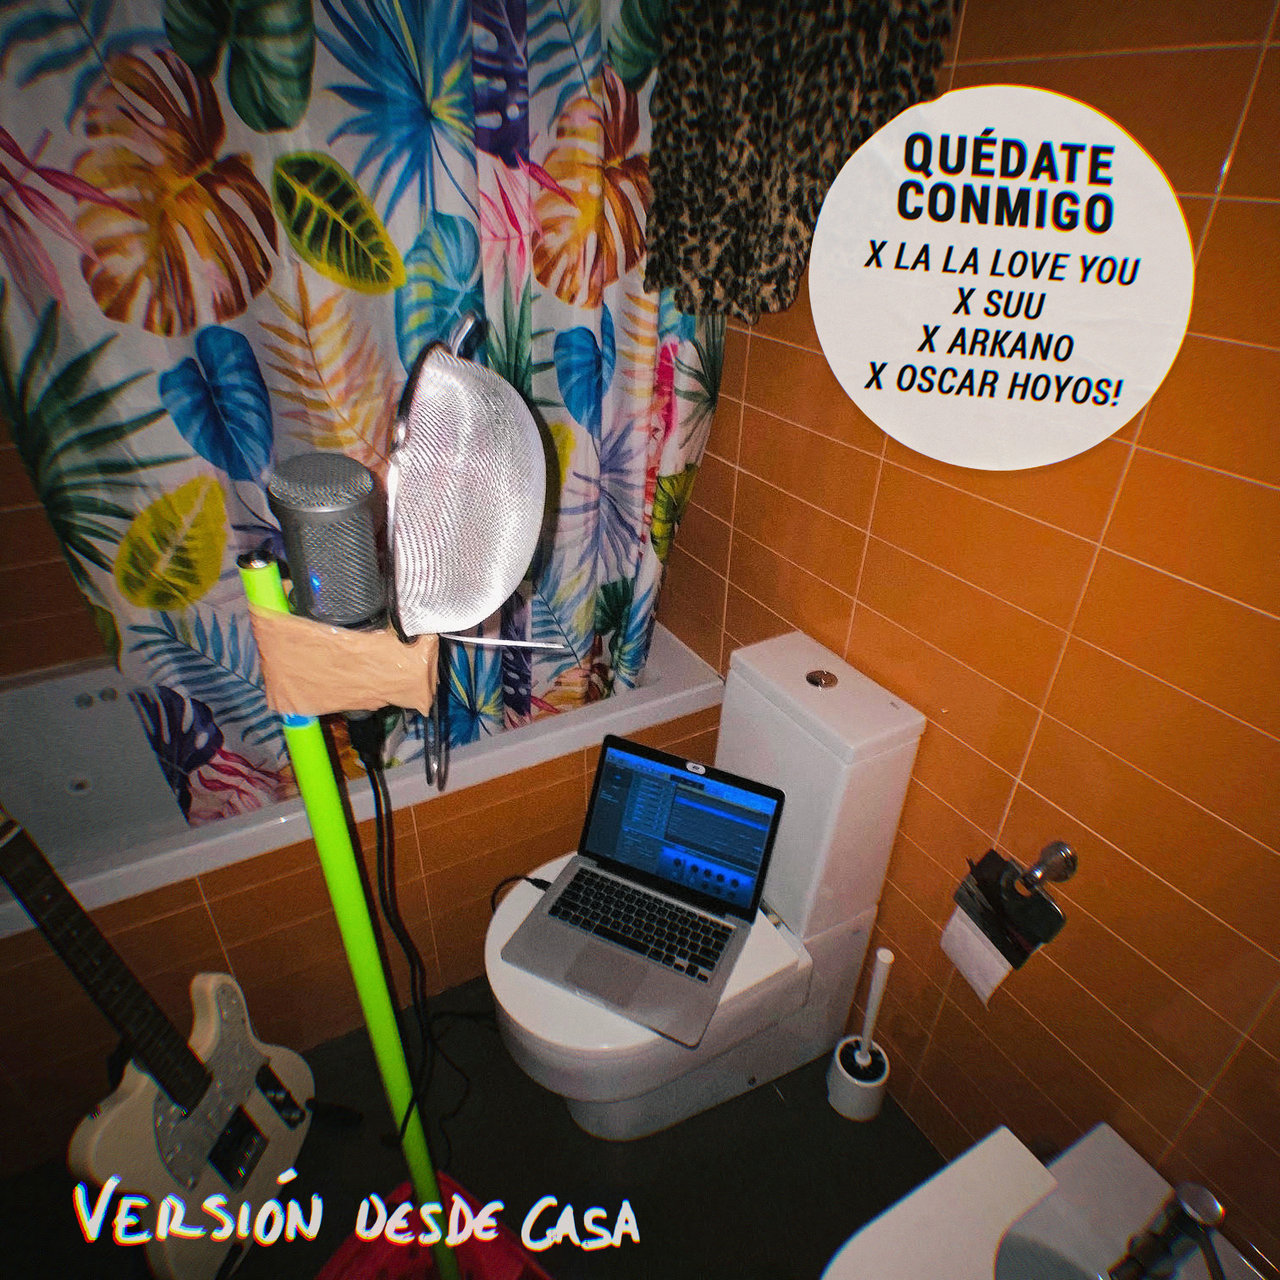 La La Love You featuring Arkano, Suu, & Oscar Hoyos! — Quédate Conmigo cover artwork